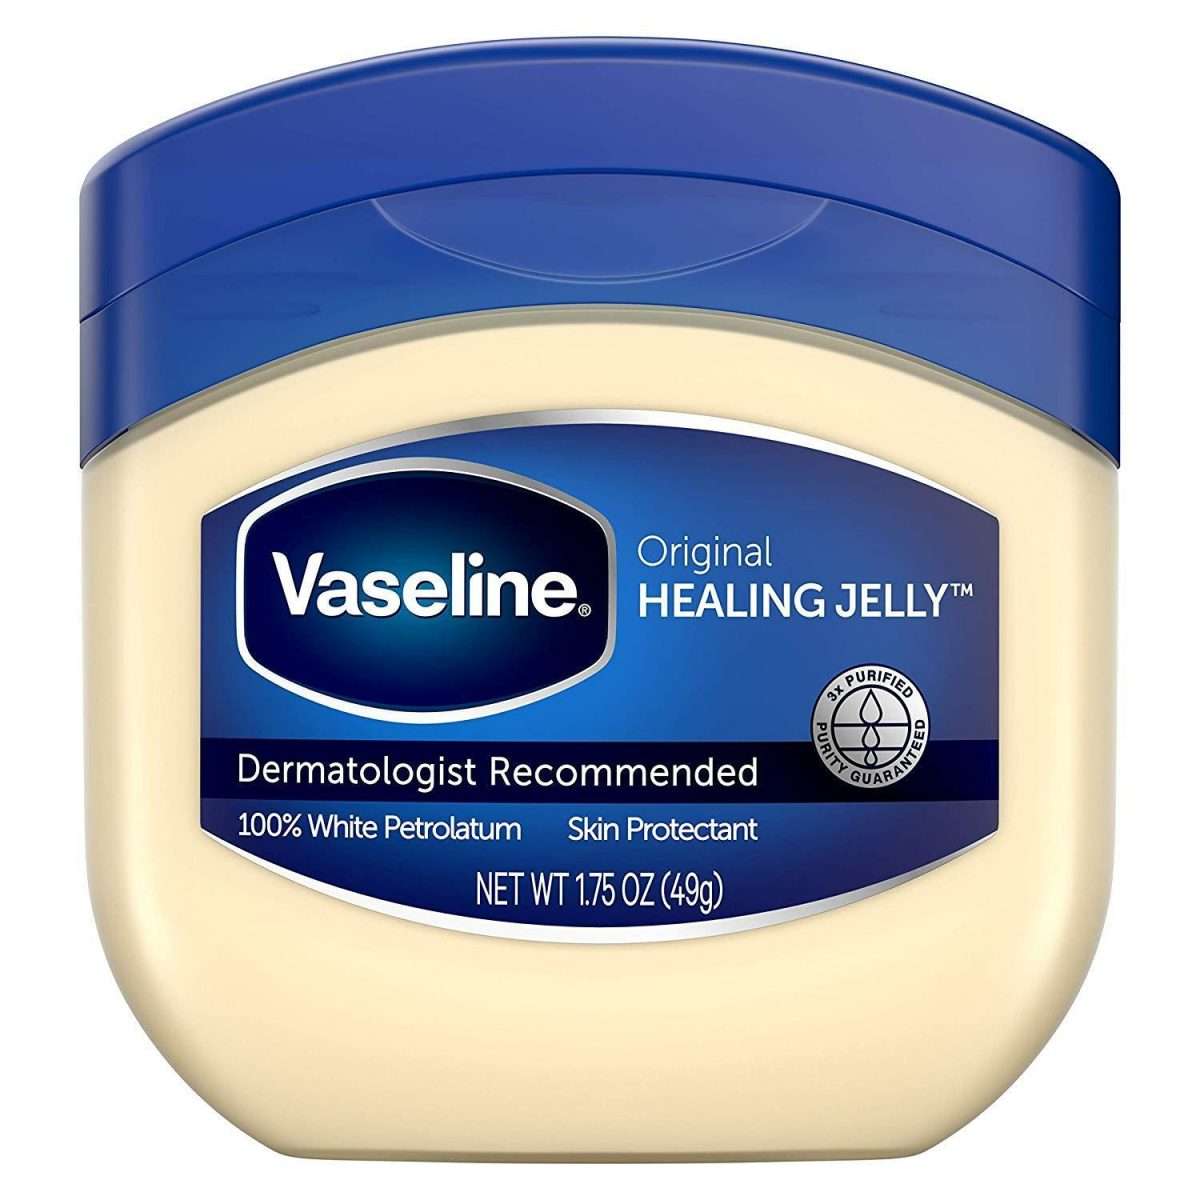 Vaseline Original Petroleum Jelly Skin Protectant for $0.99